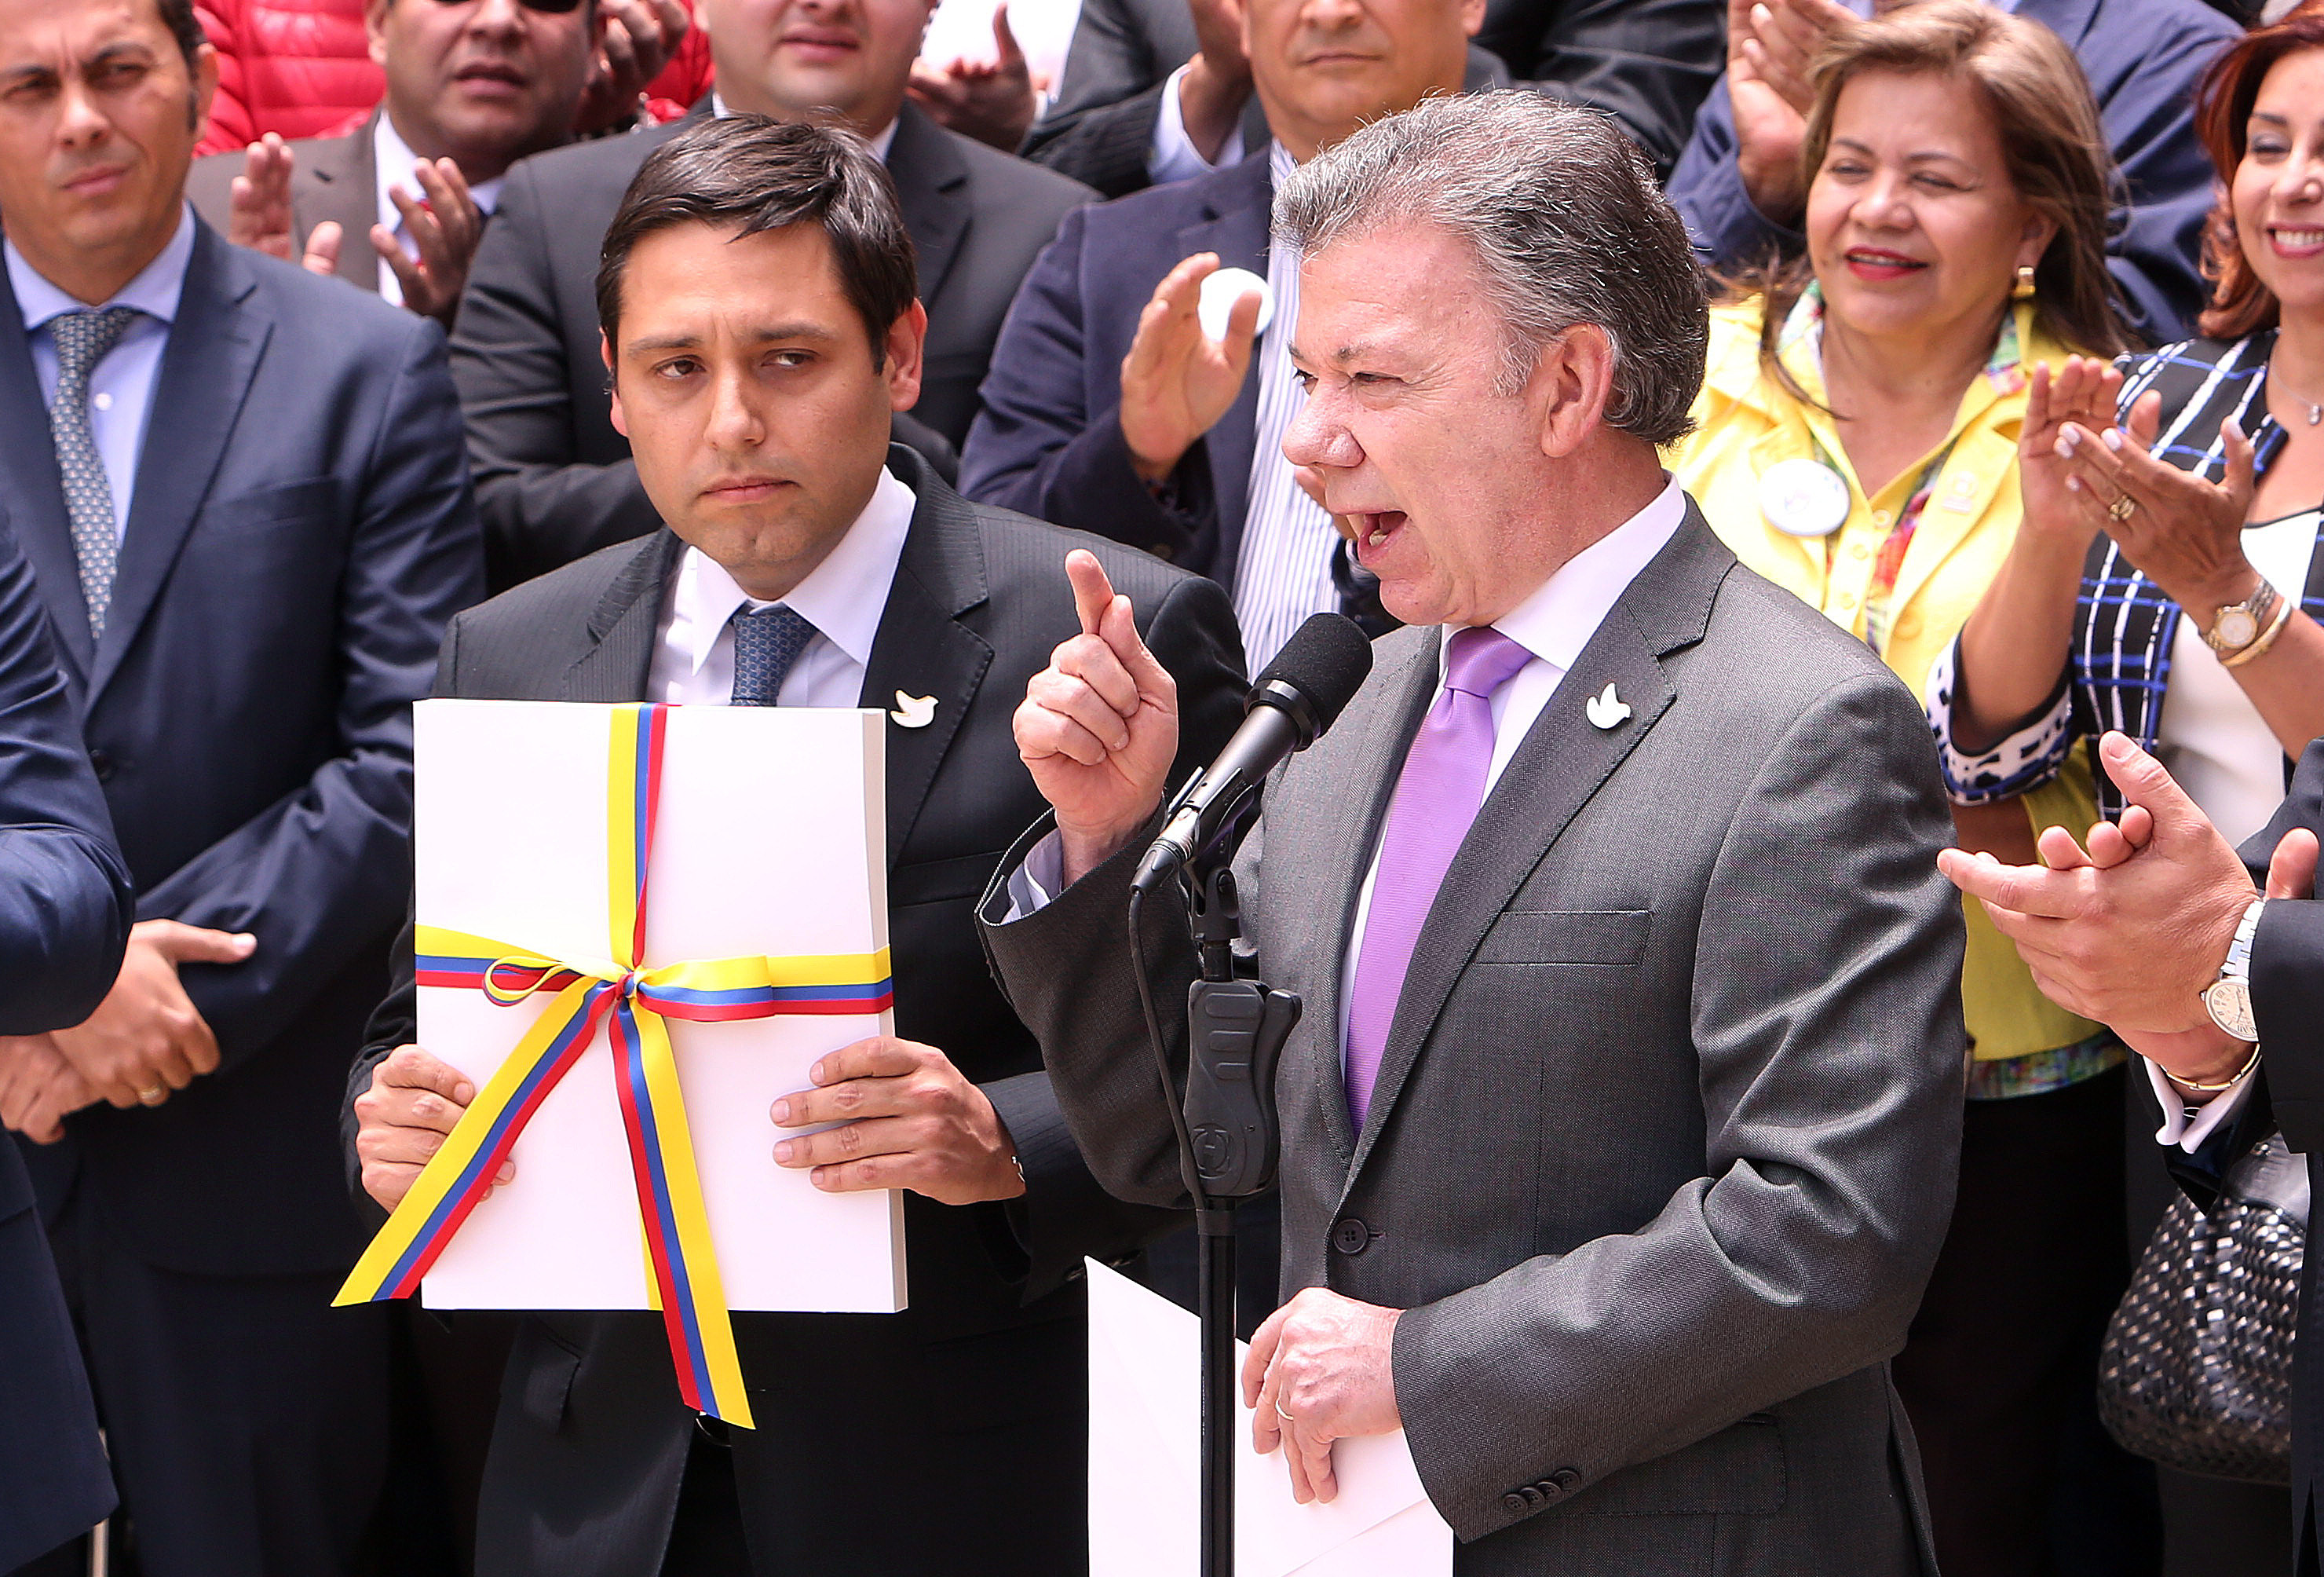 El presidente Juan Manuel Santos entregó al Congreso de Colombia el texto definitivo del acuerdo de paz con las FARC, previo a la convocatoria del plebiscito del 2 de octubre.